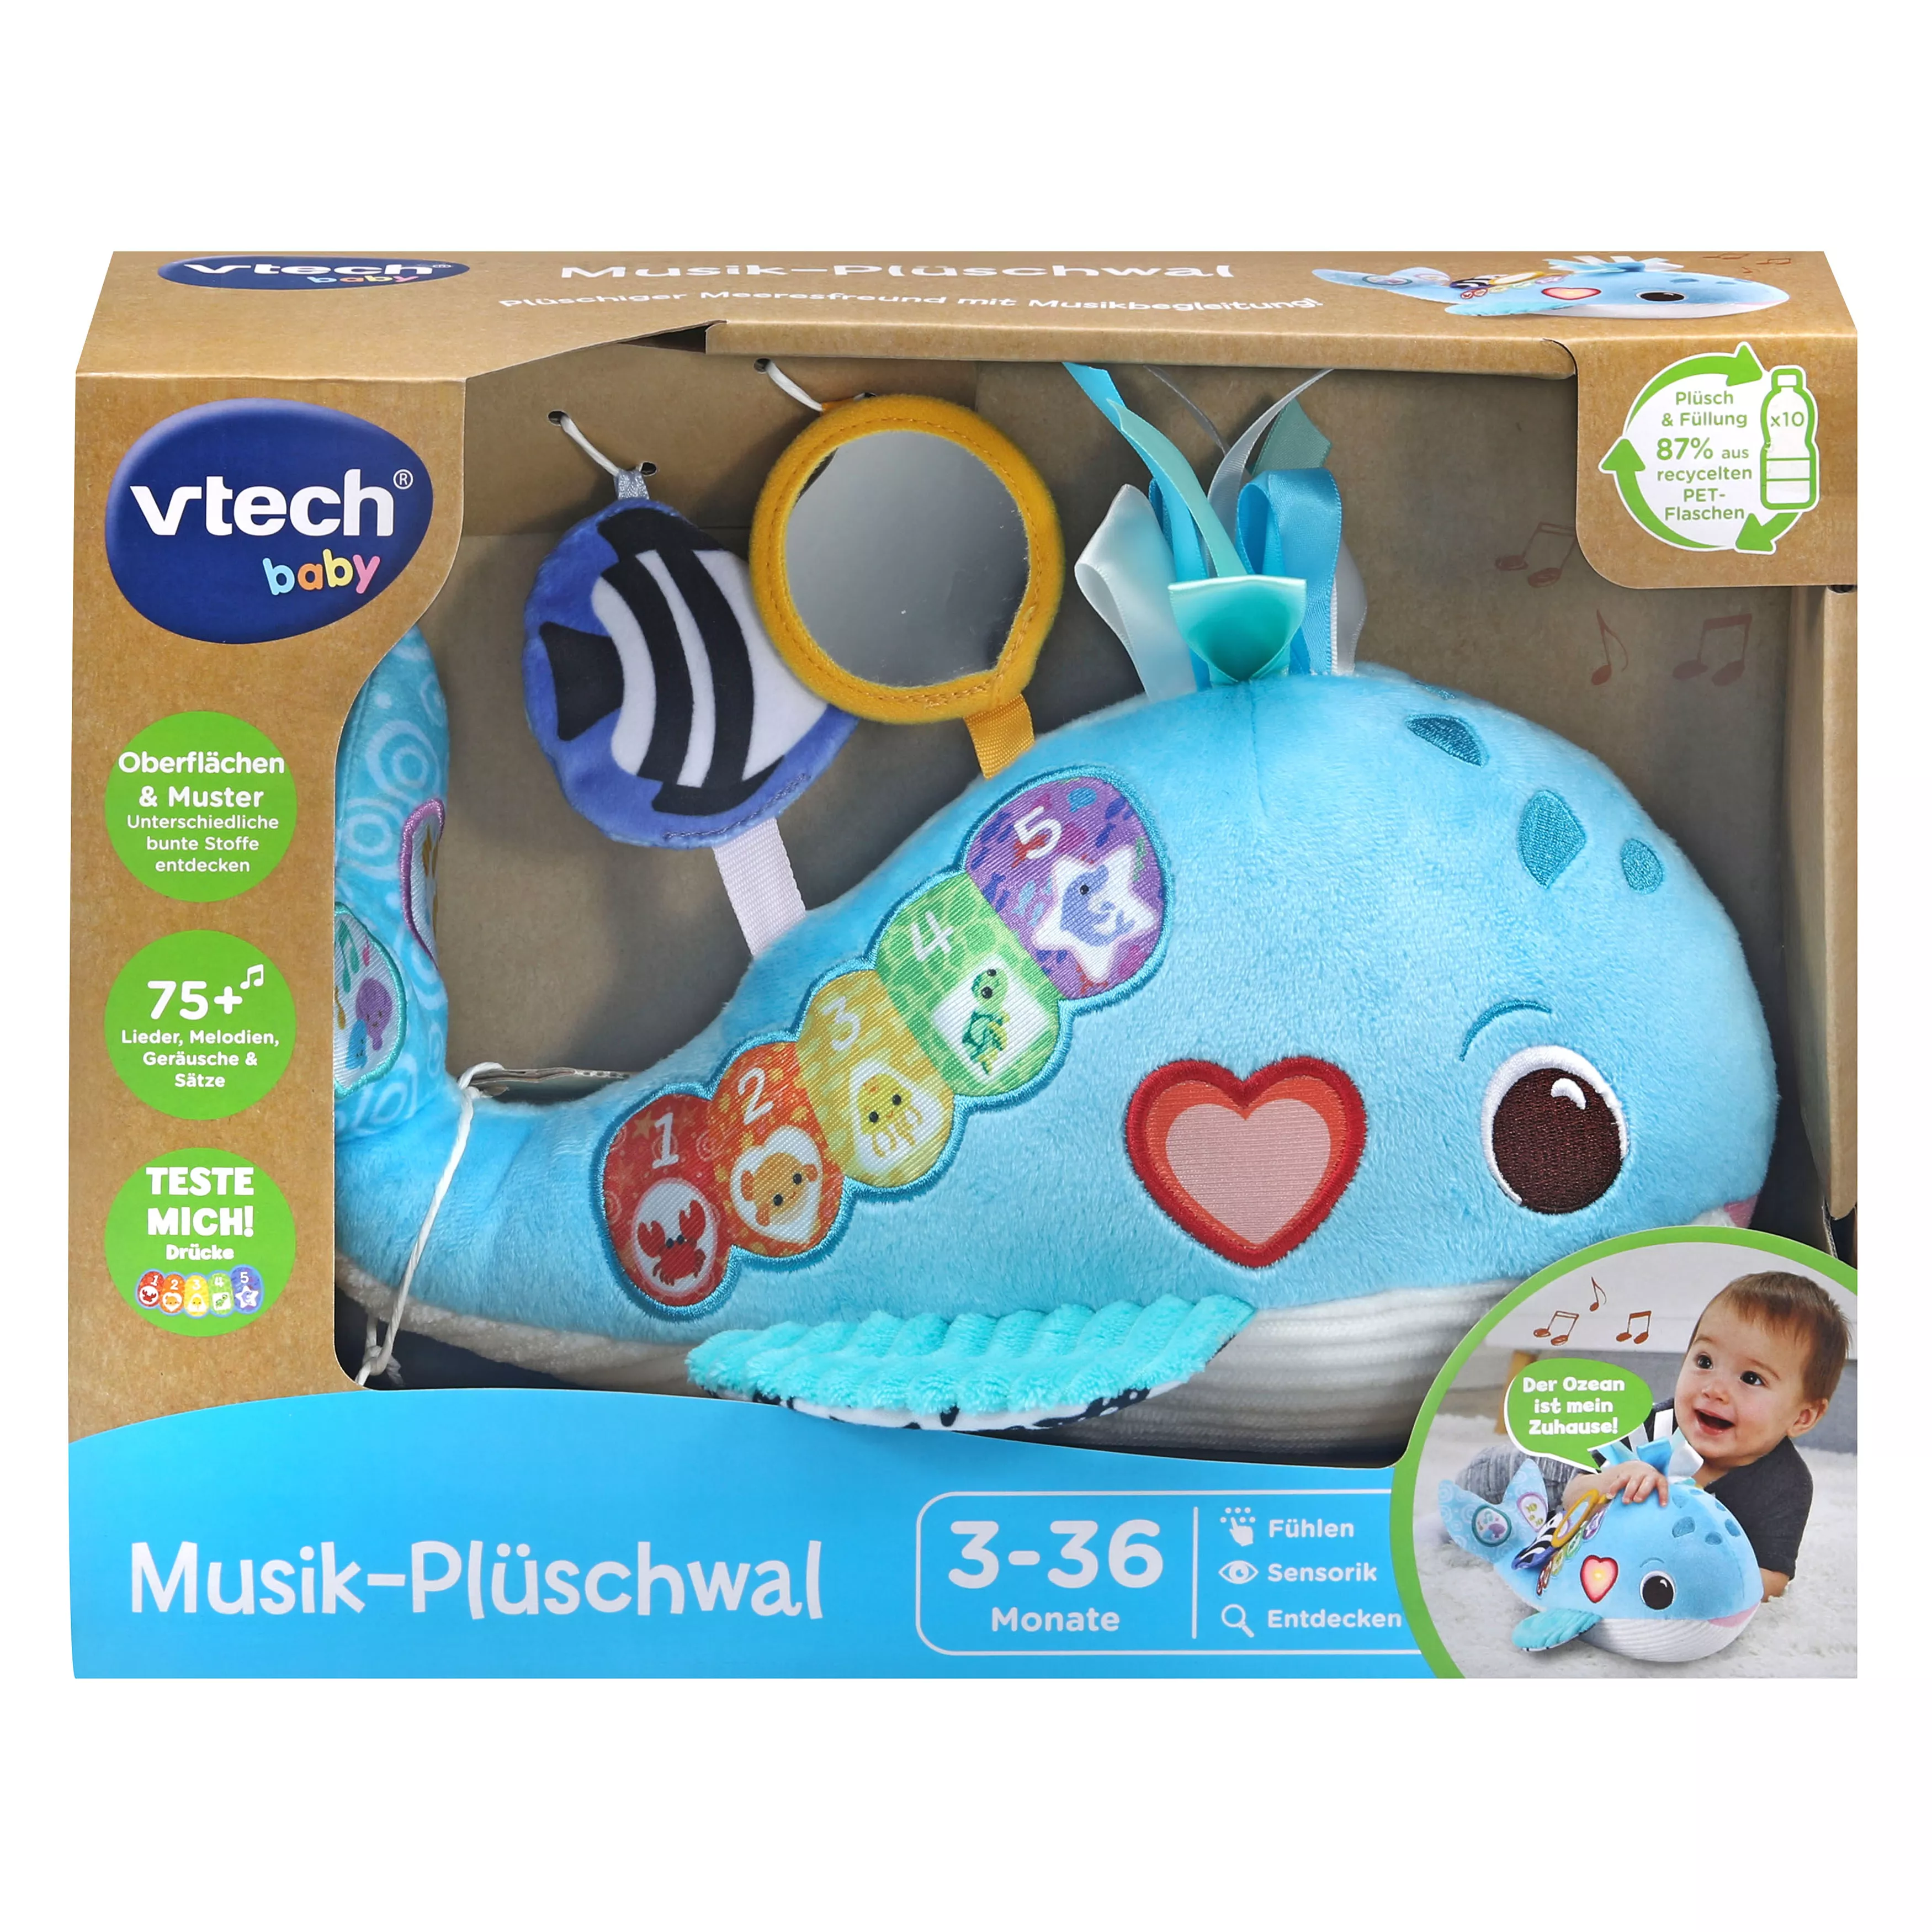 VTech Musik-Plüschwal (80-562804)